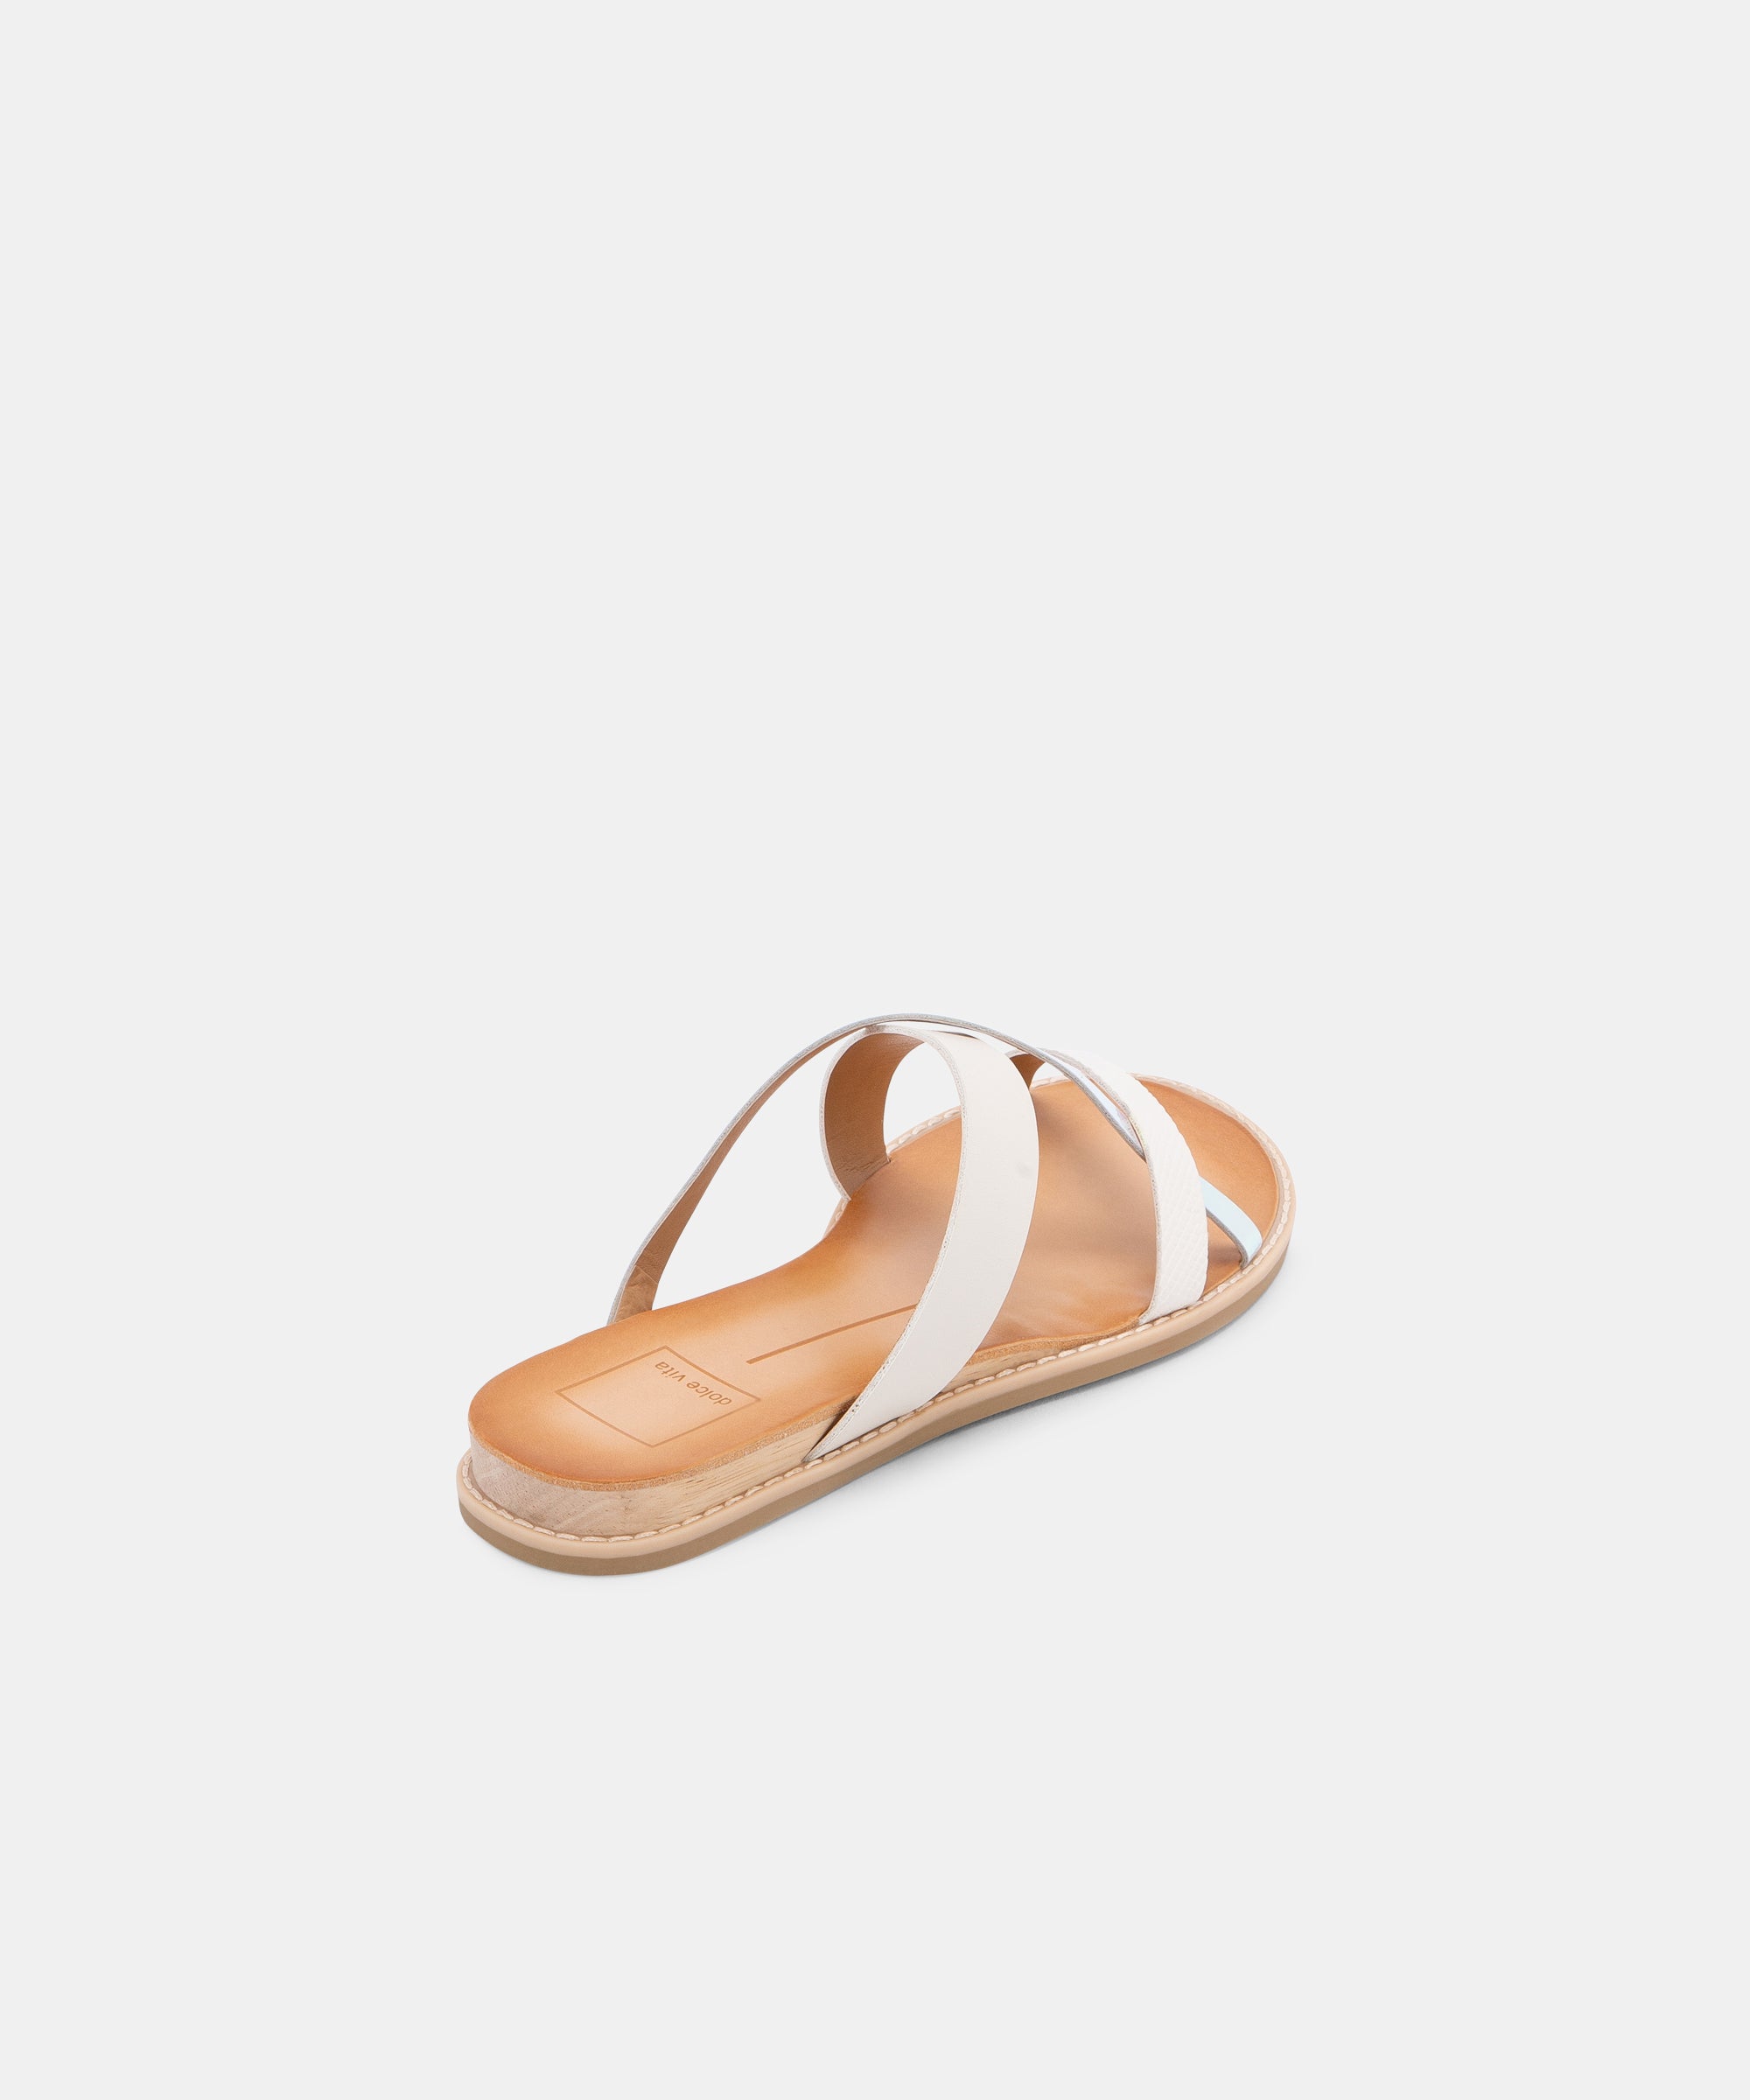 dolce vita white sandals